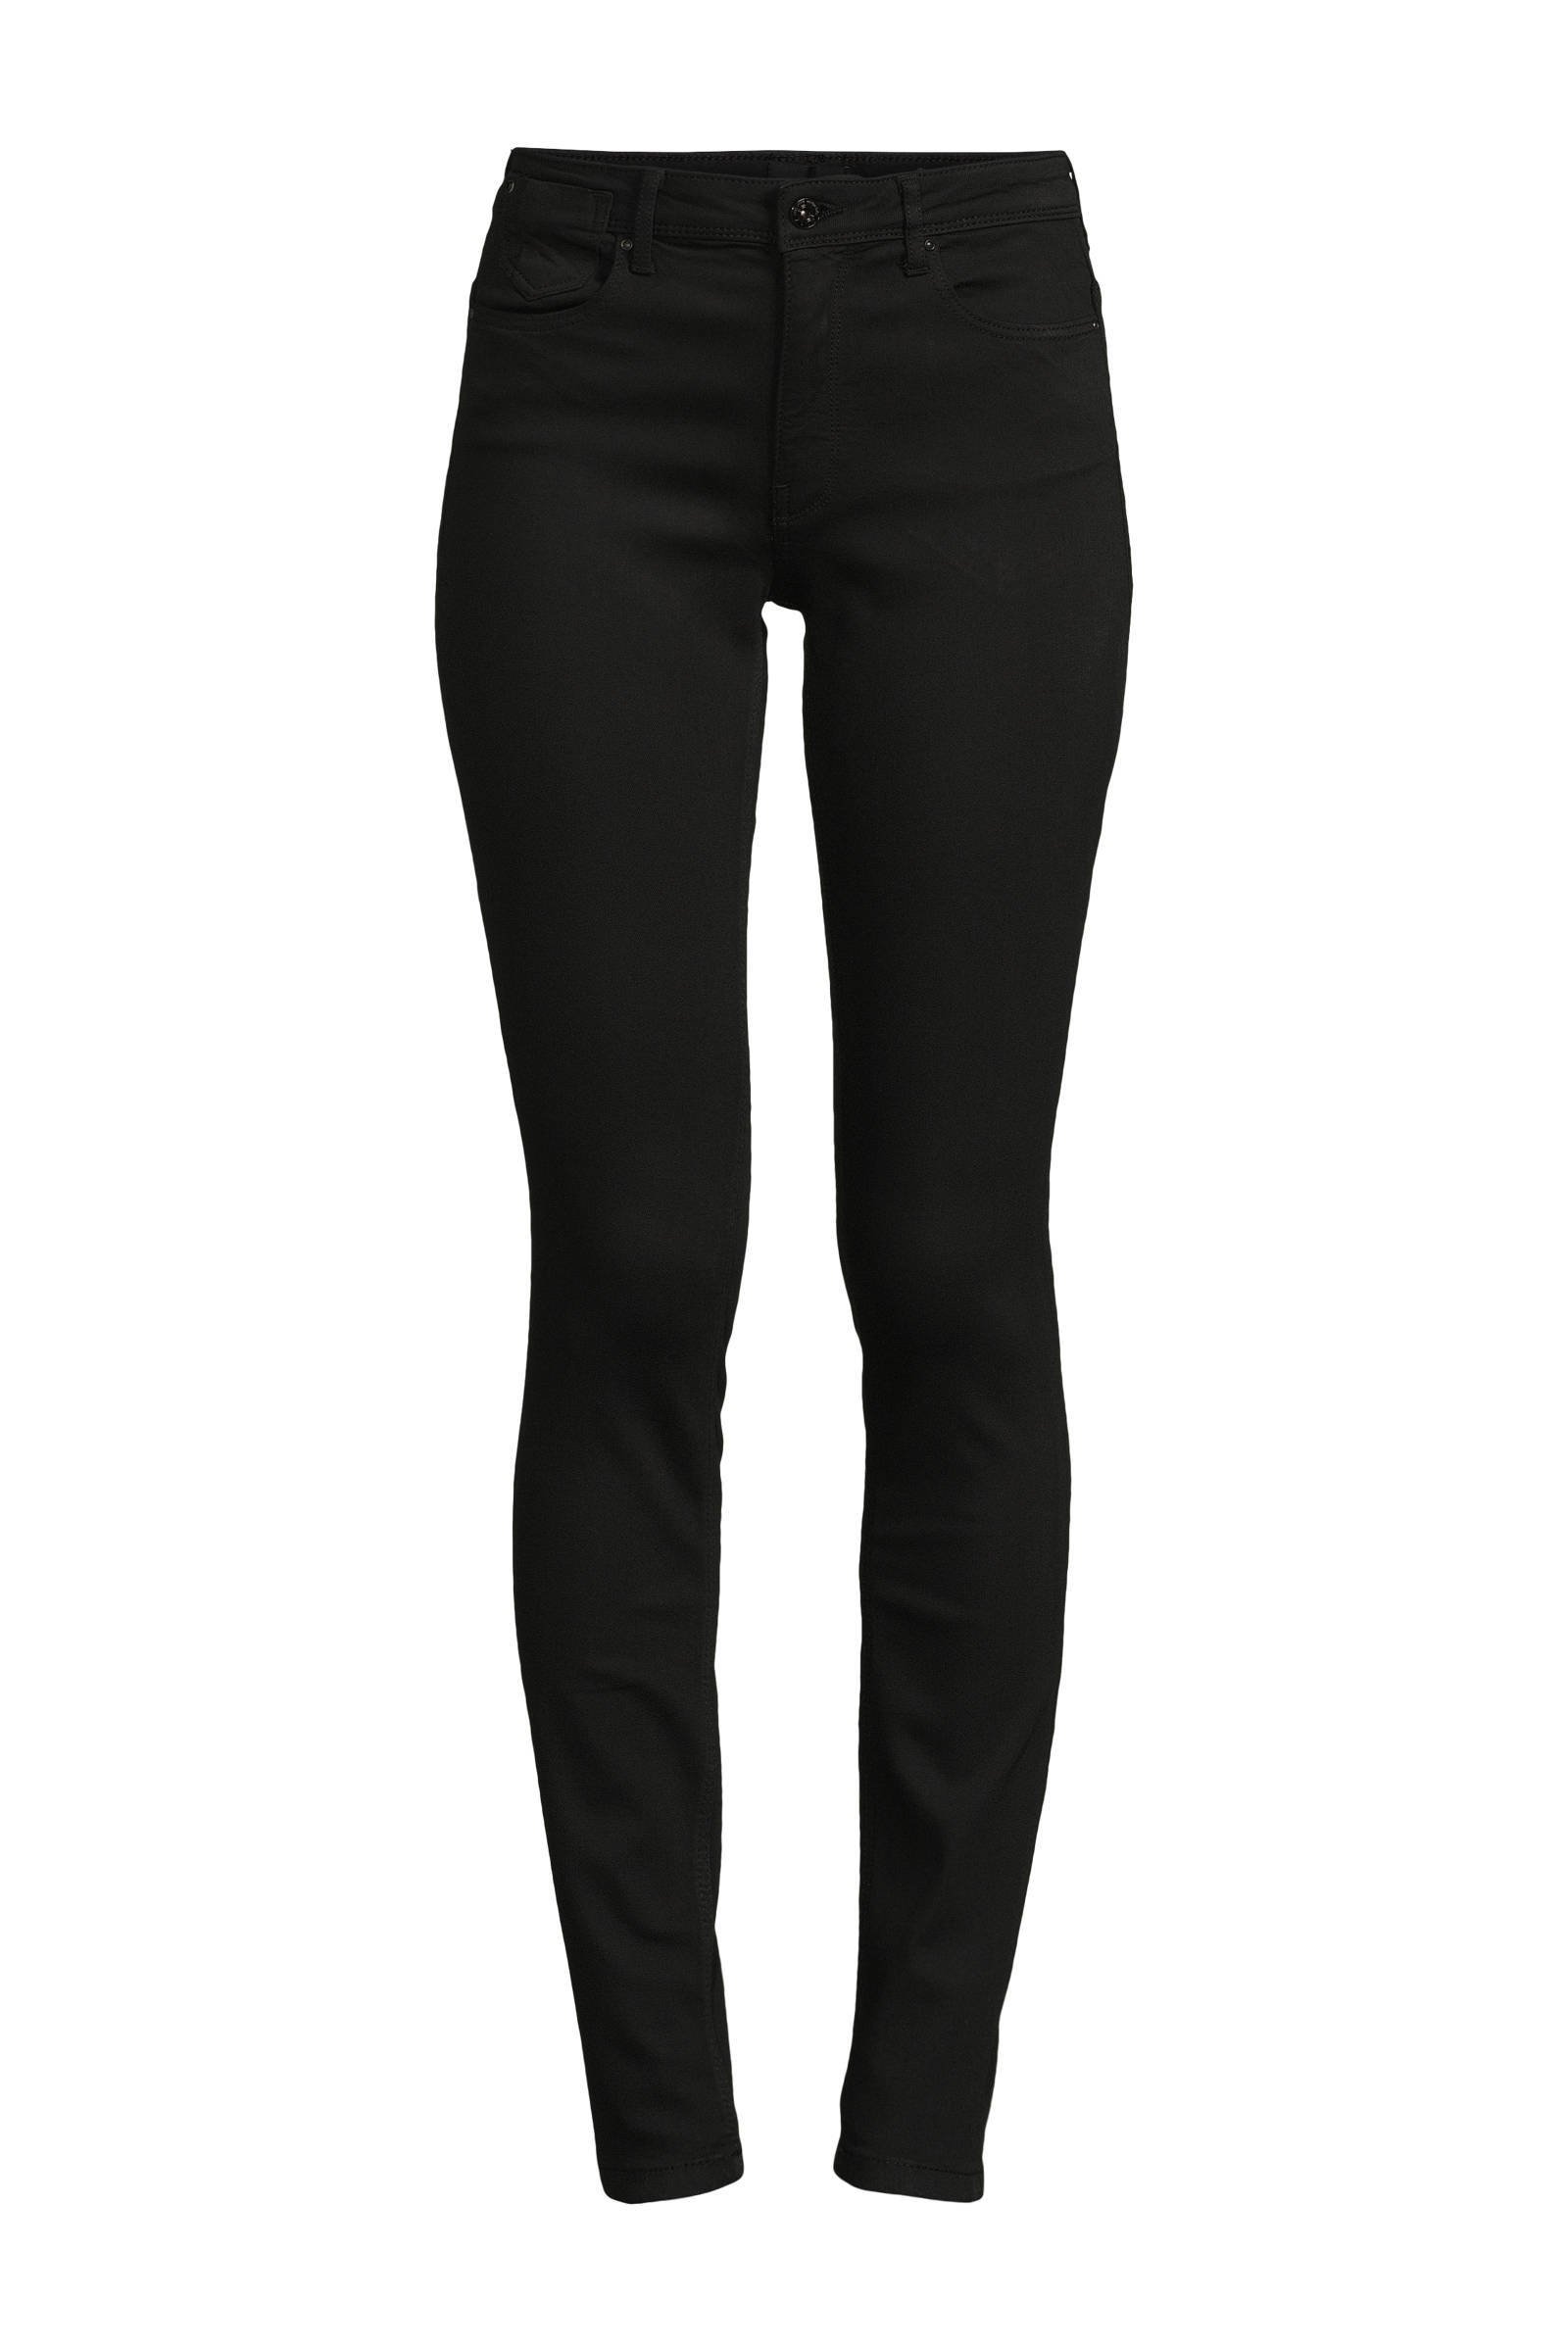 ONLY high waist skinny jeans ONLFOREVER black denim online kopen